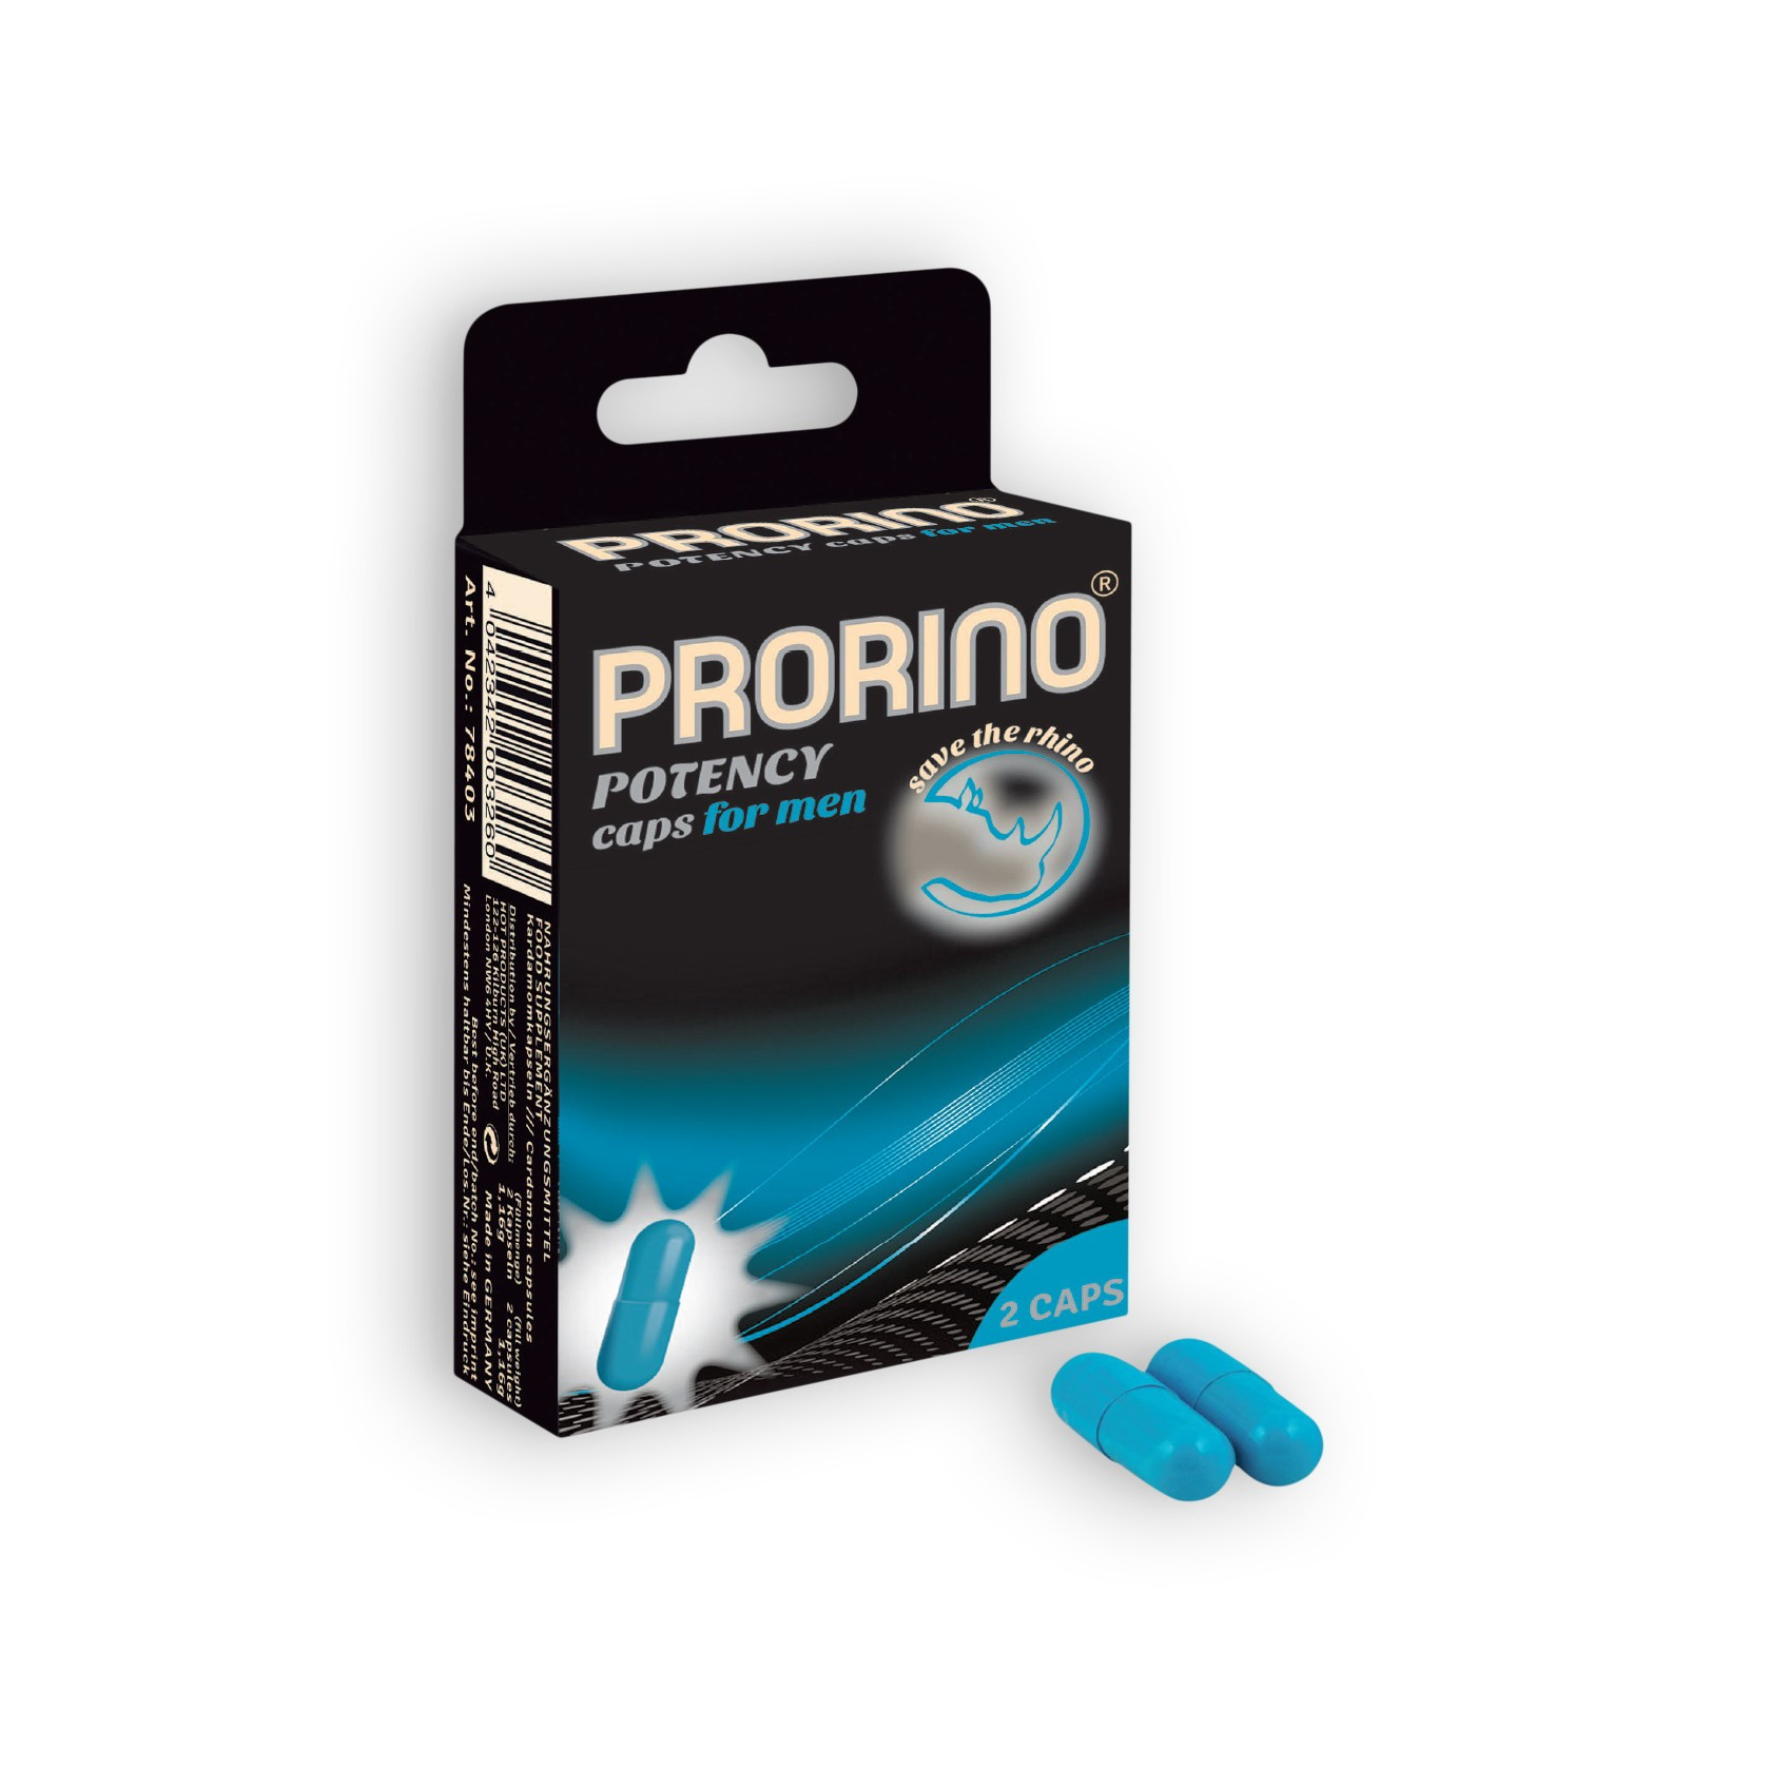 Maisto papildas potencijai stiprinti “HOT Prorino Potency Caps” - 2 vnt. (galima rinktis kiekį)